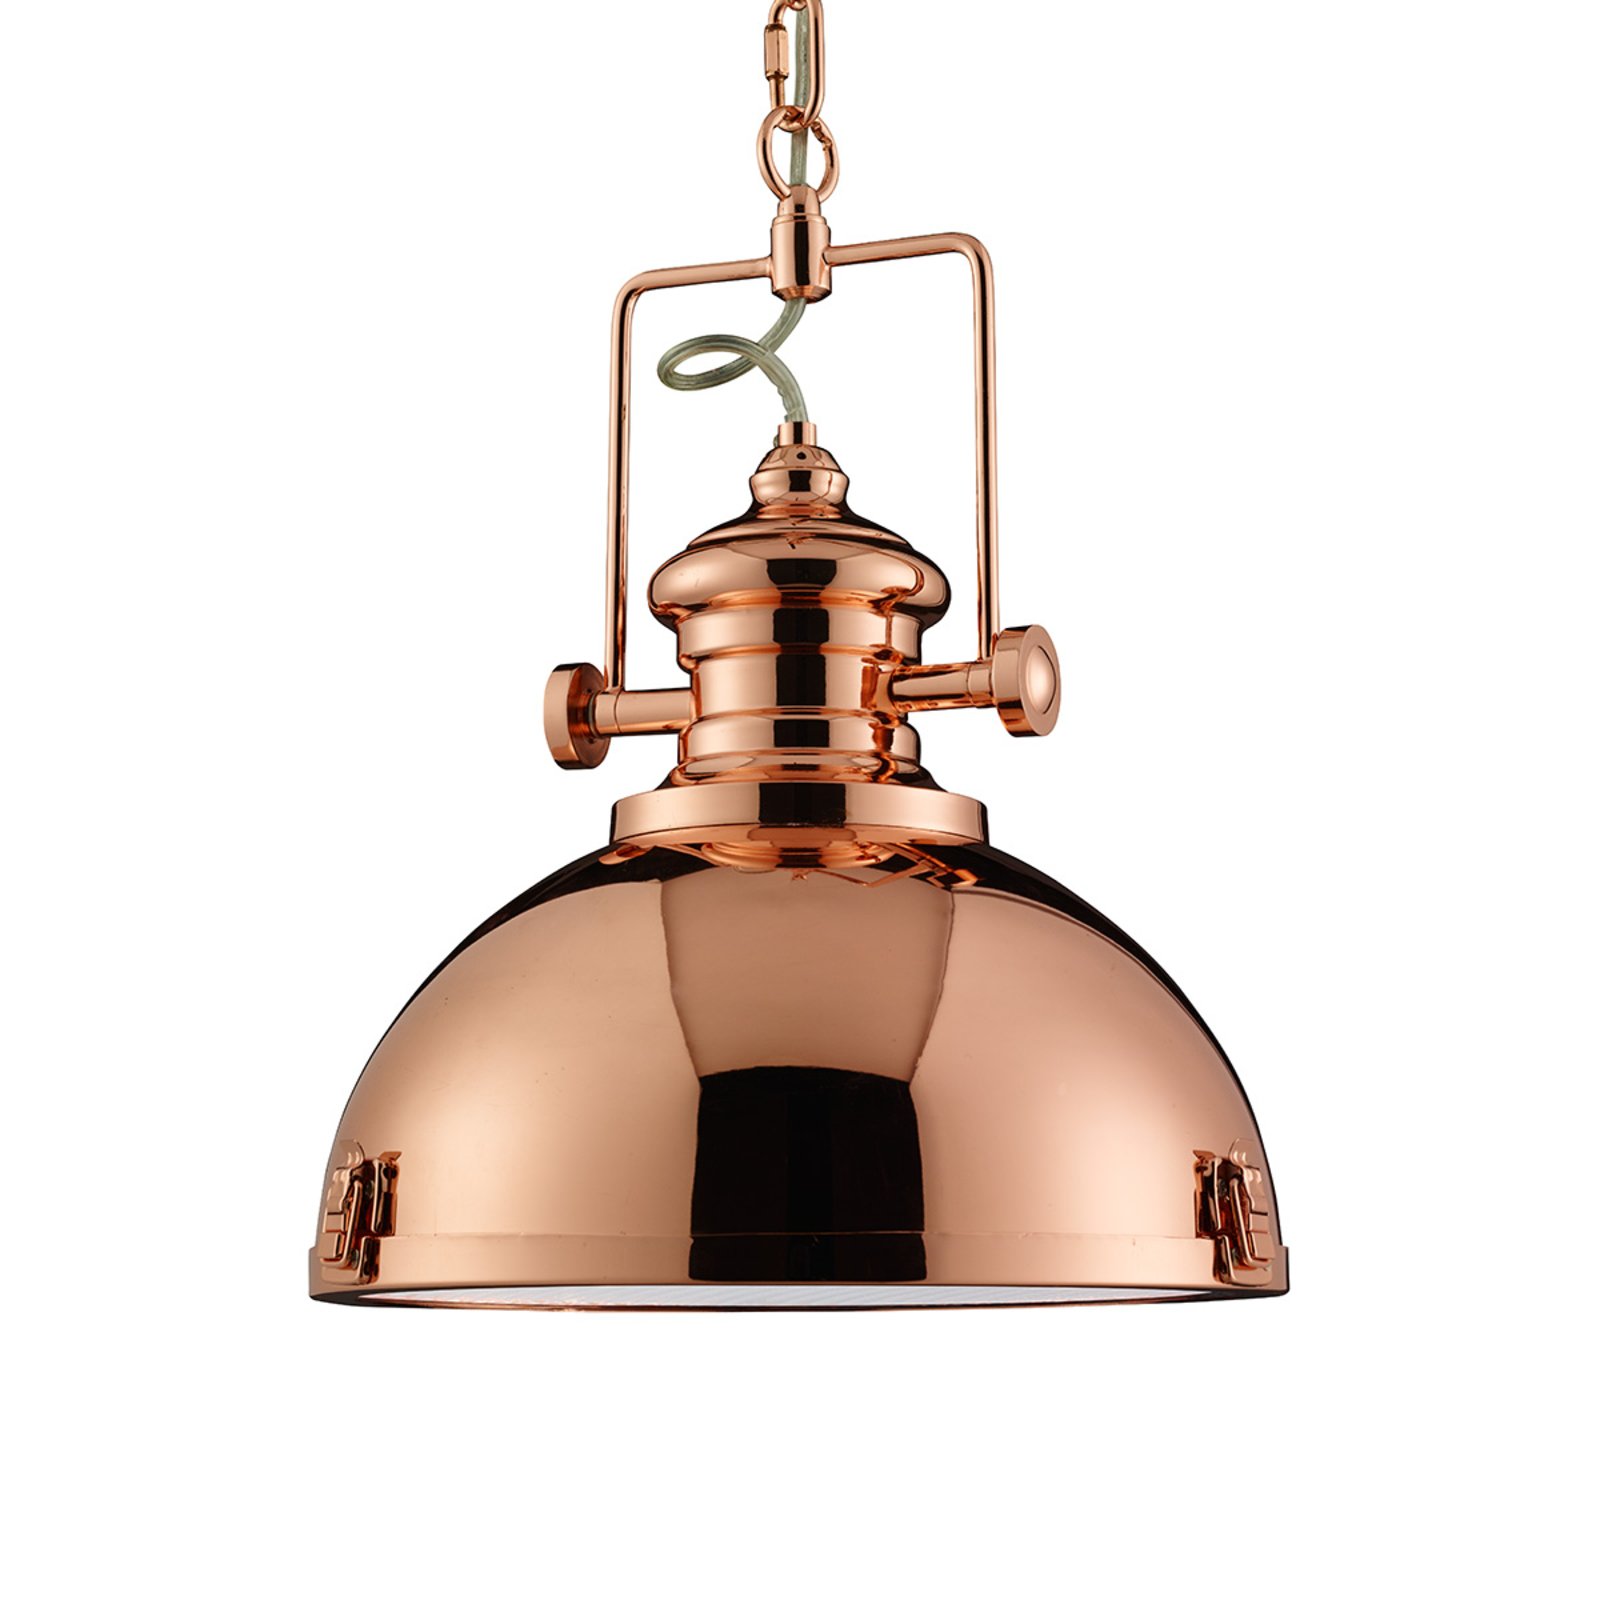 Lampa wisząca z metalu, industrialny design, kolor miedziany